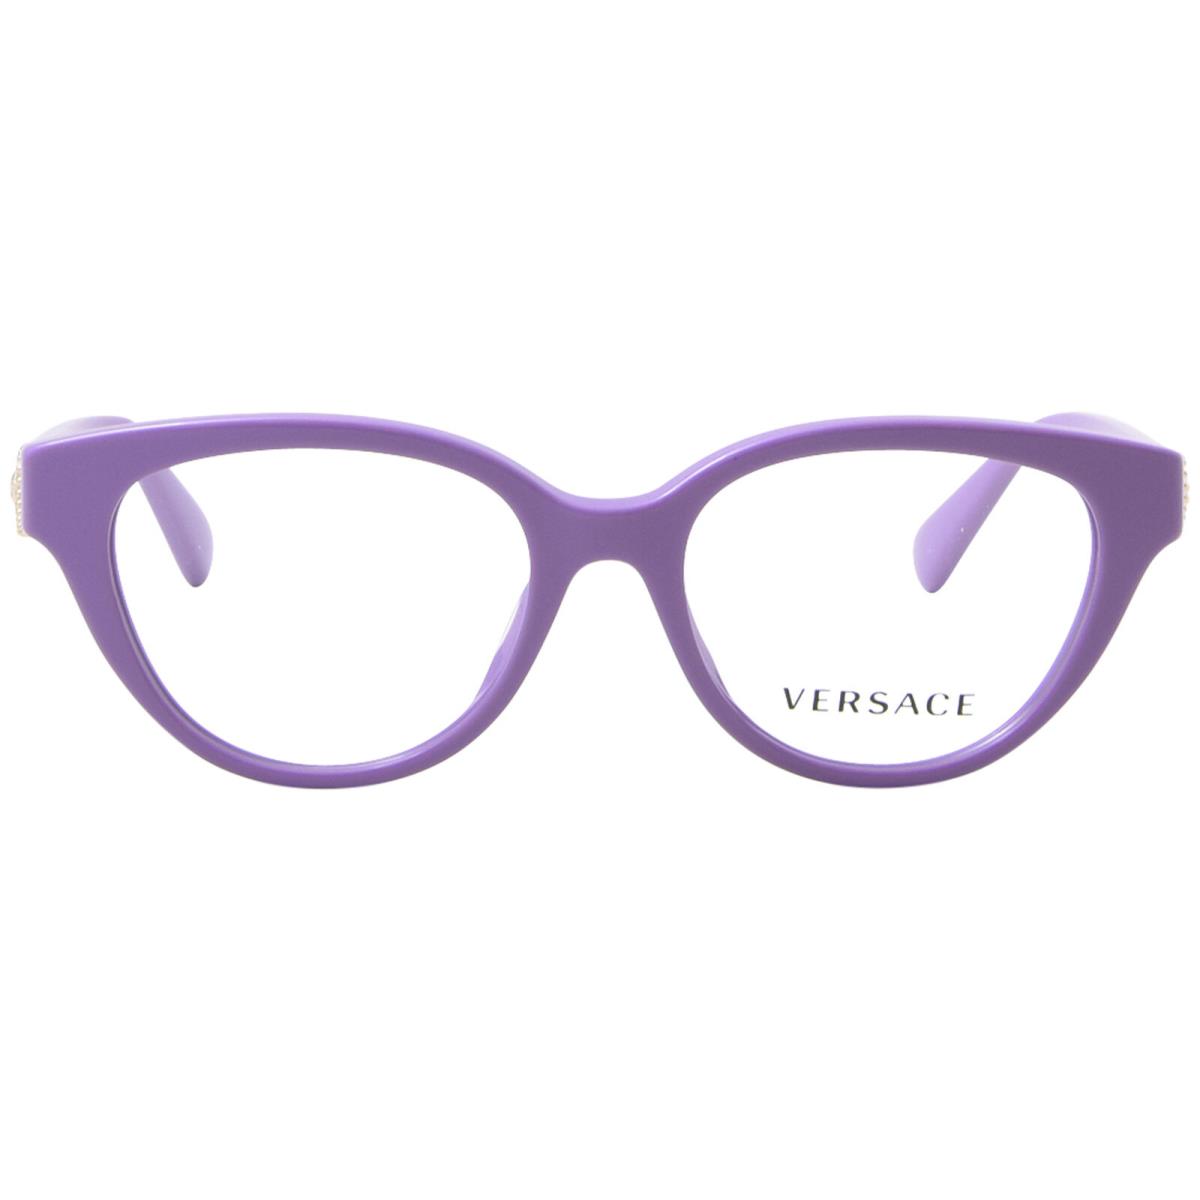 Versace VK3004 5424 Eyeglasses Youth Kids Girl`s Lavender Full Rim 46mm